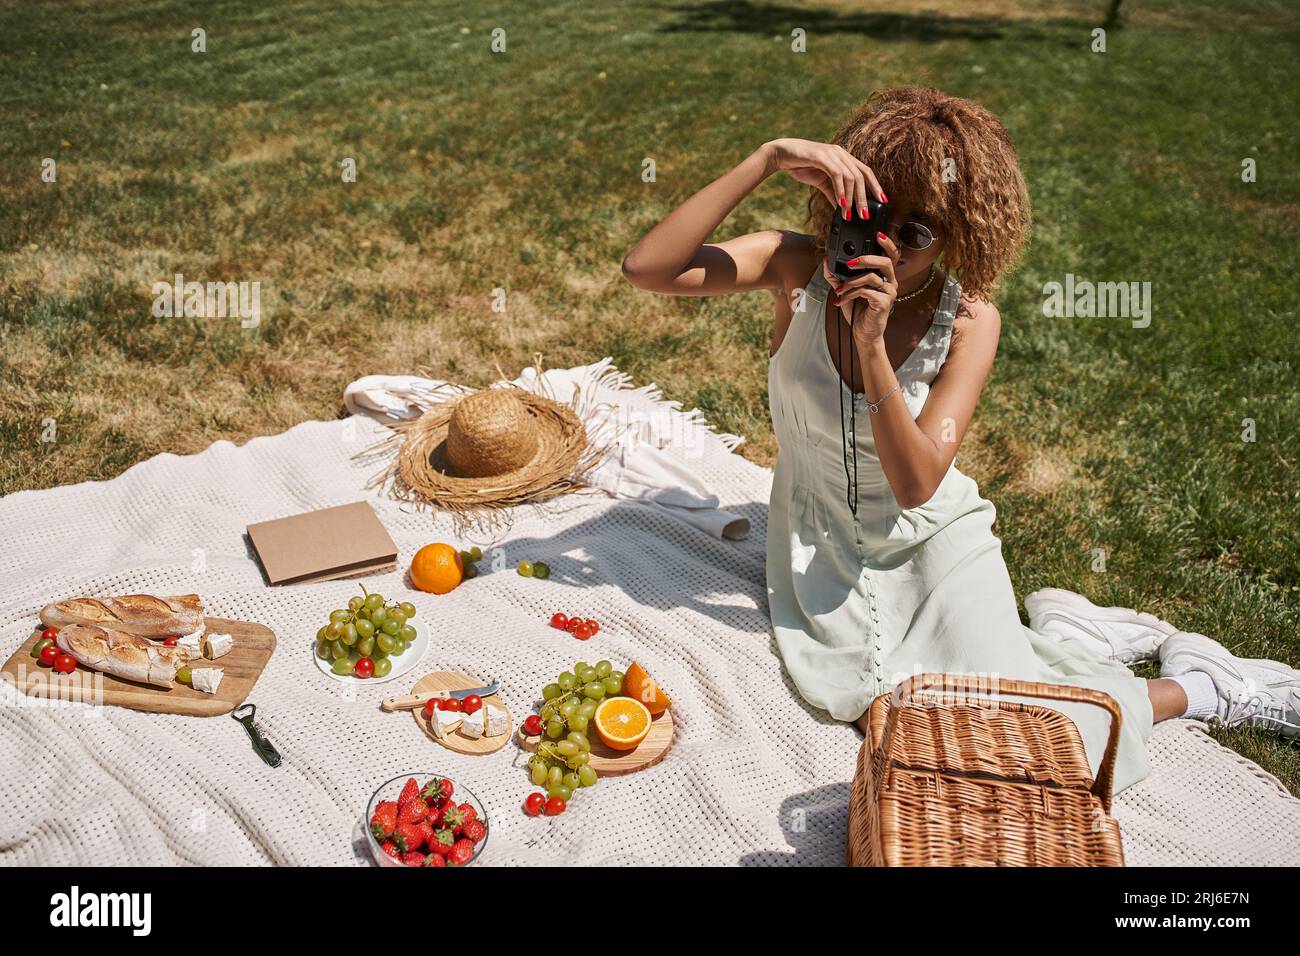 femme afro-américaine prenant la photo sur l'appareil photo vintage près des fruits et légumes, pique-nique d'été Banque D'Images